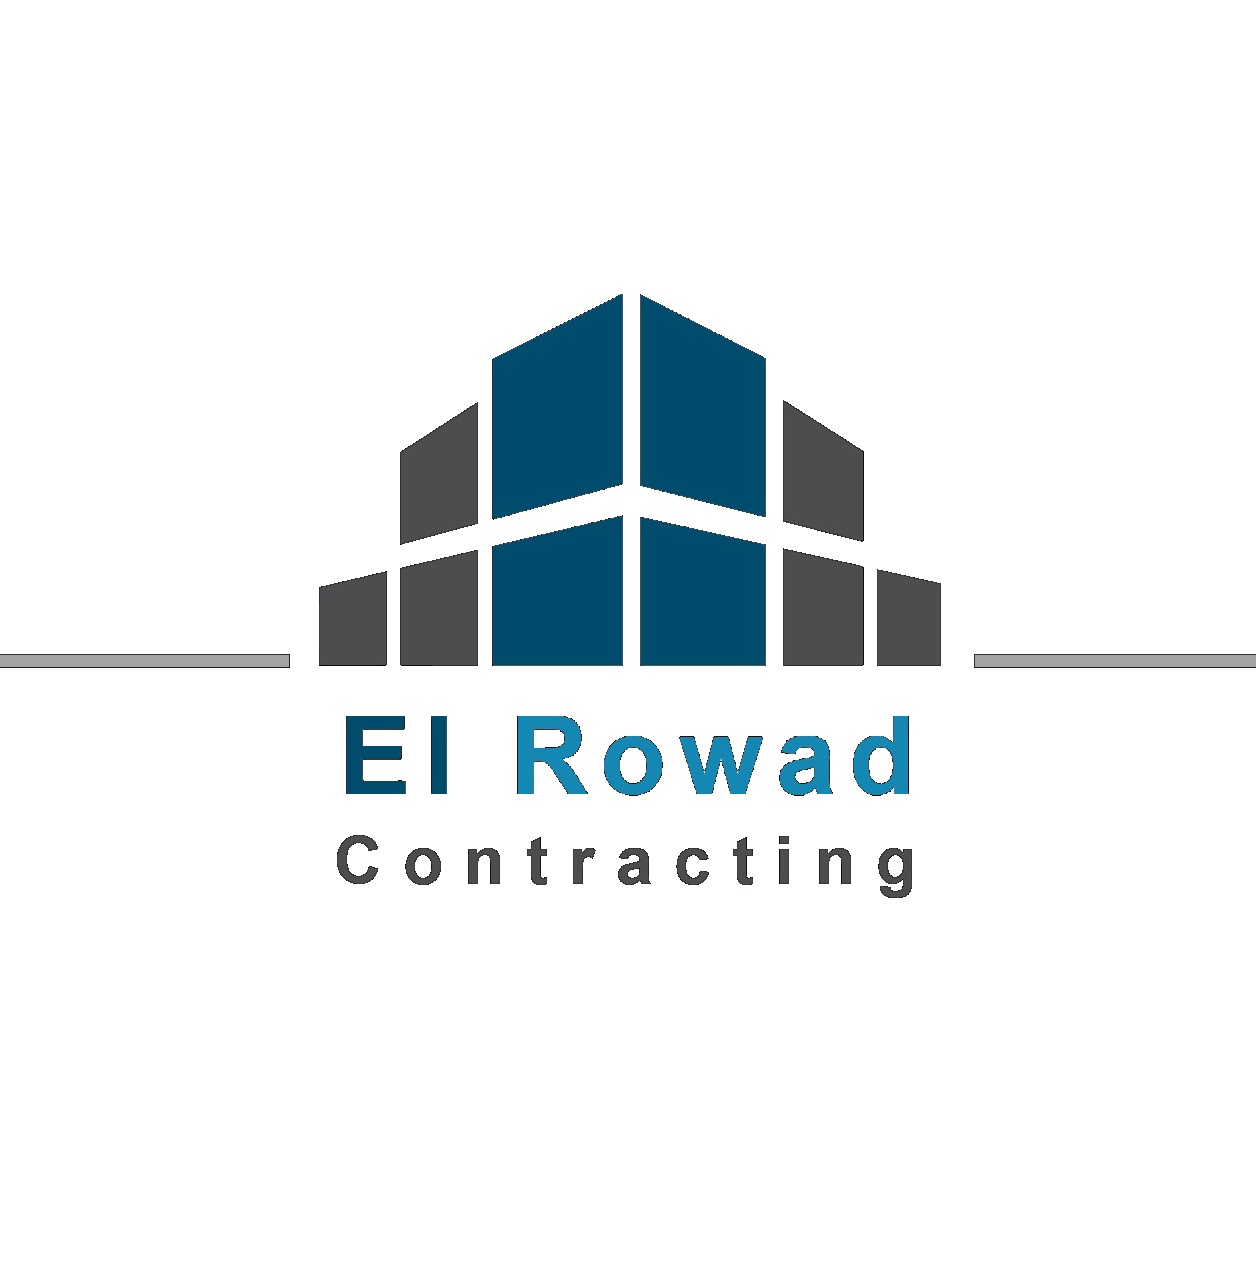 El Rowad contracting